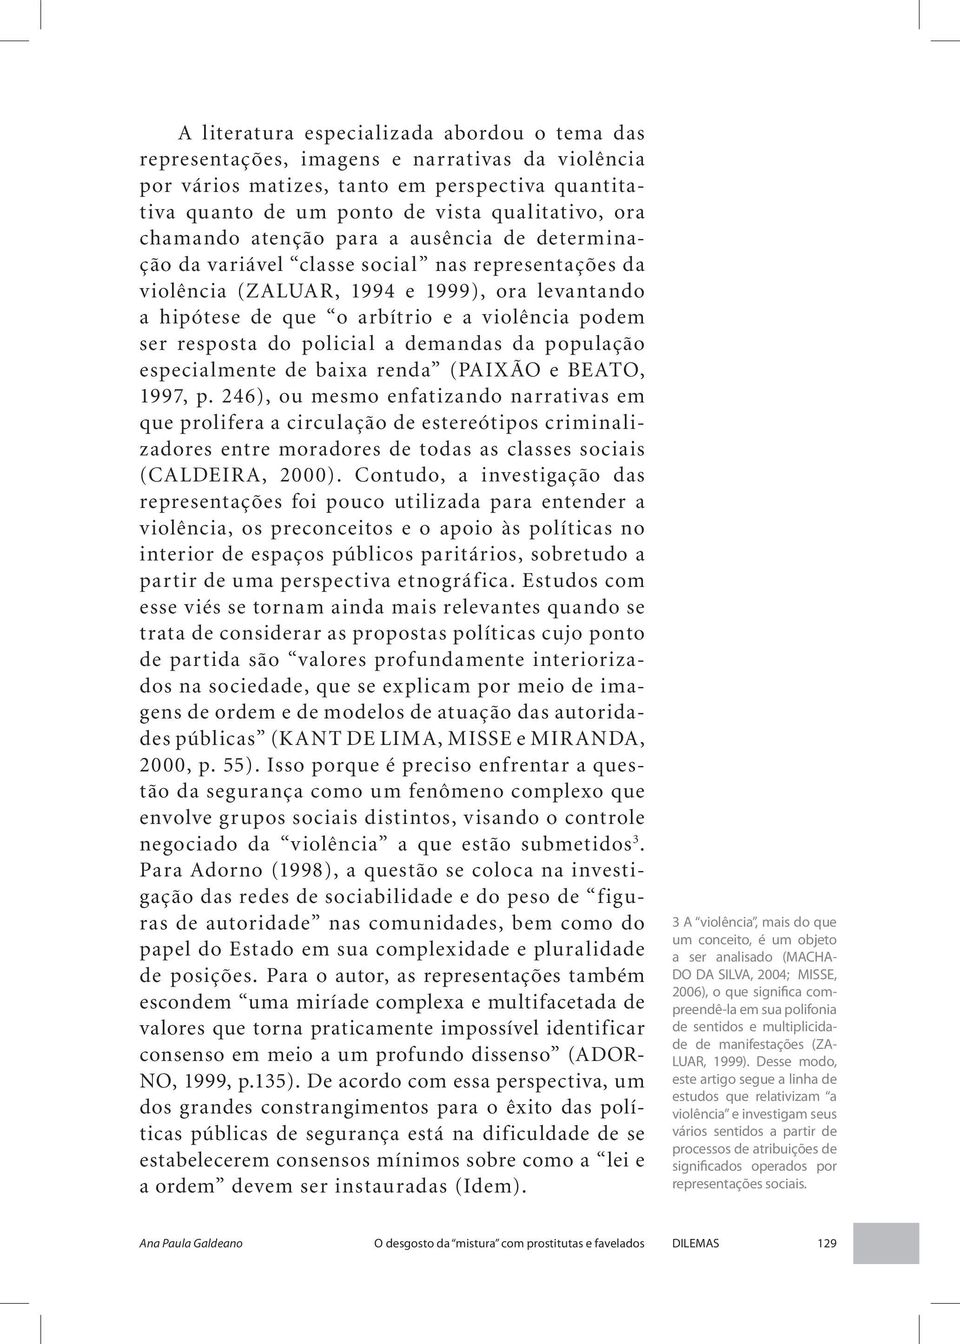 resposta do policial a demandas da população especialmente de baixa renda (PAIXÃO e BEATO, 1997, p.